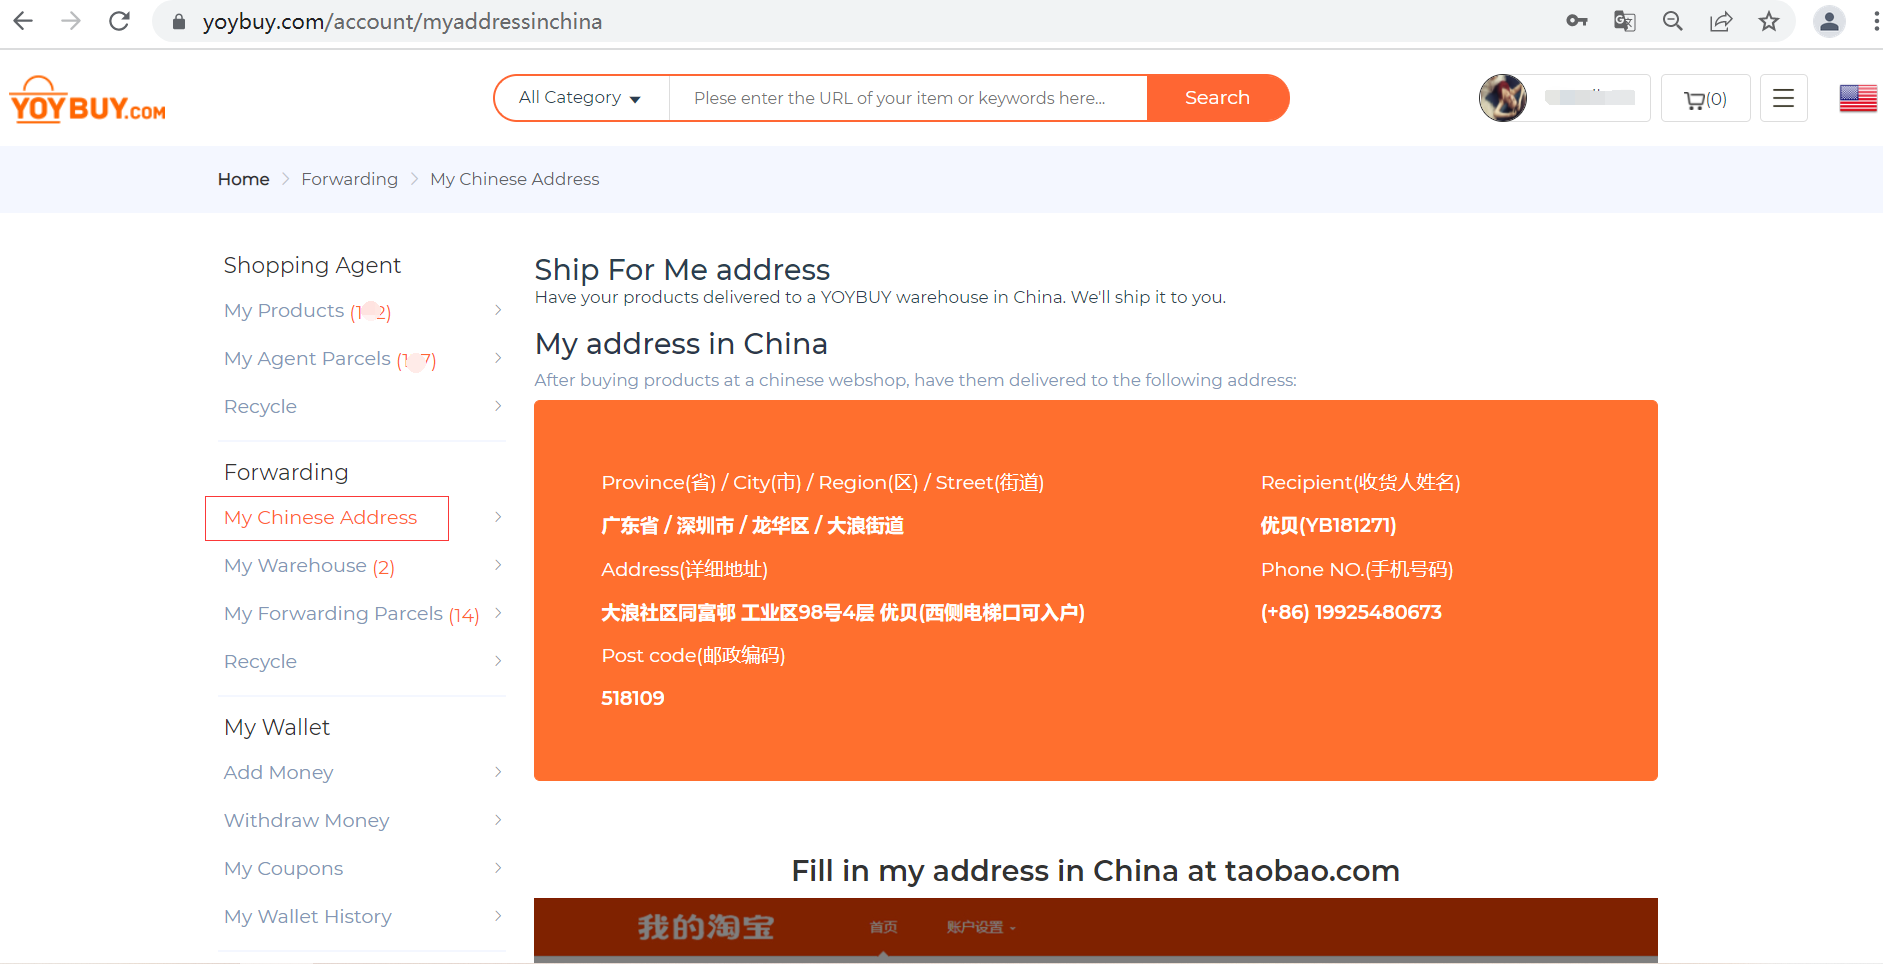 My Chinese Address 